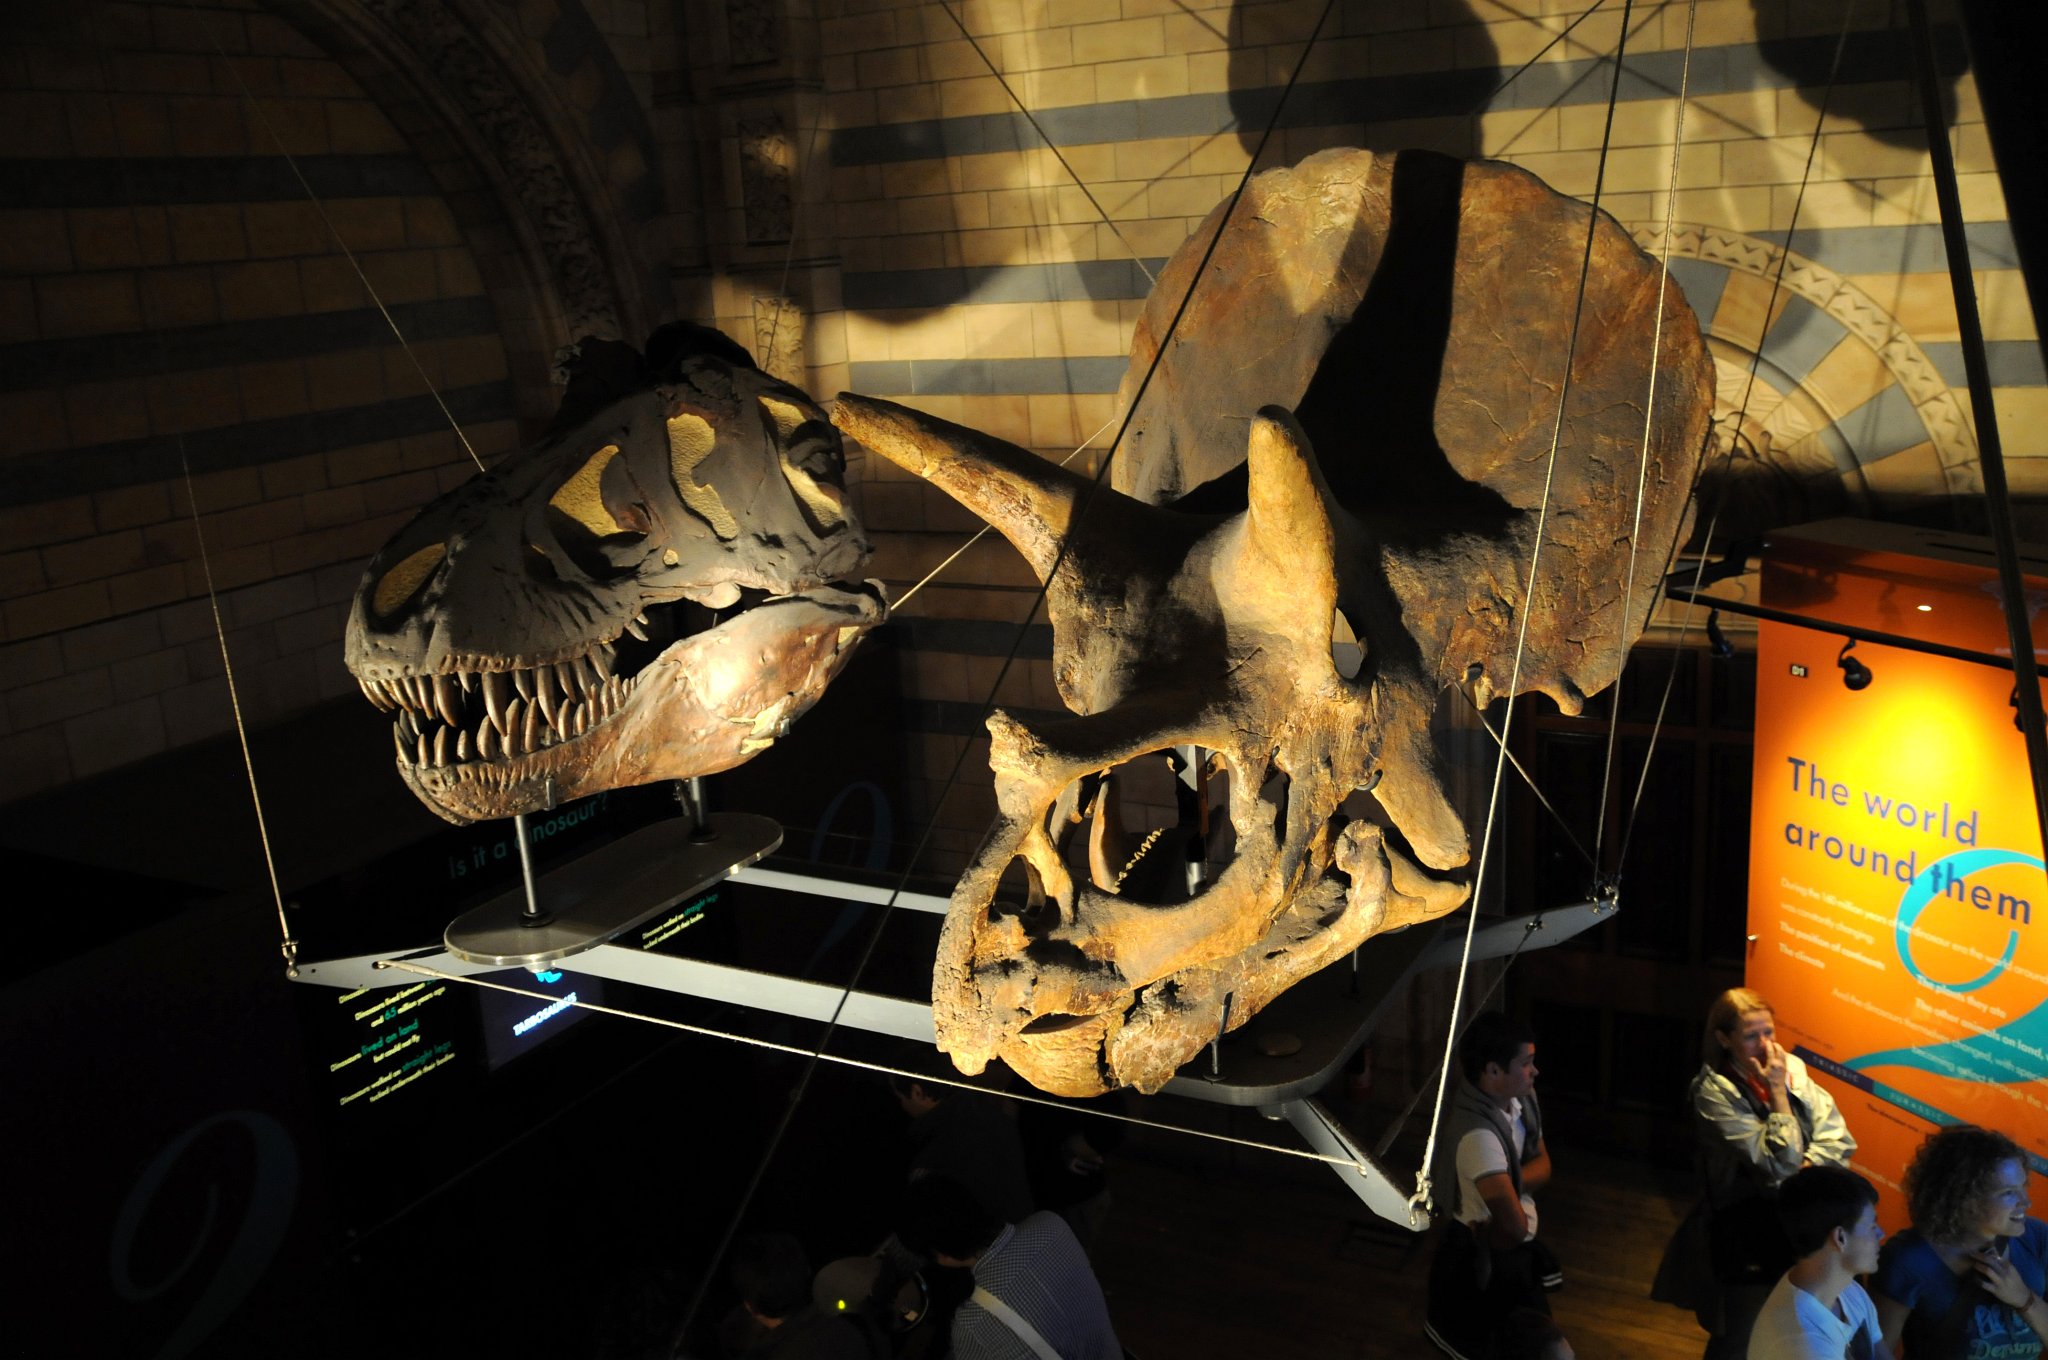 DSC_7151_2.jpg - Lebka Triceratopse a Tyrannosaura. Triceratops neboli „hrozná třírohá hlava“ je druhý historicky popsaný (1889) rohatý dinosaurus (první byl rod Monoclonius již roku 1876); Triceratops byl robustní čtyřnohý býložravec, jehož výška v nejvyšším bodě zad činila až 3,0 m, délka až 9 m a váha kolem sedmi (možná ale i přes deset) tun. Byl tedy zároveň jedním z největších známých rohatých dinosaurů (ceratopsidů). Je však pravděpodobné, že jeho evoluční předek Eotriceratops xerinsularis, popsaný v roce 2007, byl ještě větší (délka možná až 12 metrů). Podobně jako ostatní rohatí dinosauři i Triceratops žil s velkou pravděpodobností ve stádech. Tyrannosaurus rex („tyranský královský ještěr“ - odvozeno ze starořeckého τύραννος – tyrannos = vládce, resp. krutovládce, a latinského rex = král) byl jeden z největších masožravých dinosaurů (teropodů) a zároveň jedním z největších suchozemských predátorů všech dob. Přesto, že již ztratil primát největšího dravého dinosaura, svou tělesnou stavbou patřil k nejmohutnějším a nejnebezpečnějším. Žil před asi 68-65 miliony let (na konci křídové periody druhohorní éry) na území celého západu dnešních Spojených států amerických. Nedávný nález však ukazuje na fakt, že tento rod mohl jiným druhem existovat již o několik milionů let dříve. Dnes je tento druh zřejmě nejznámějším dinosaurem vůbec.